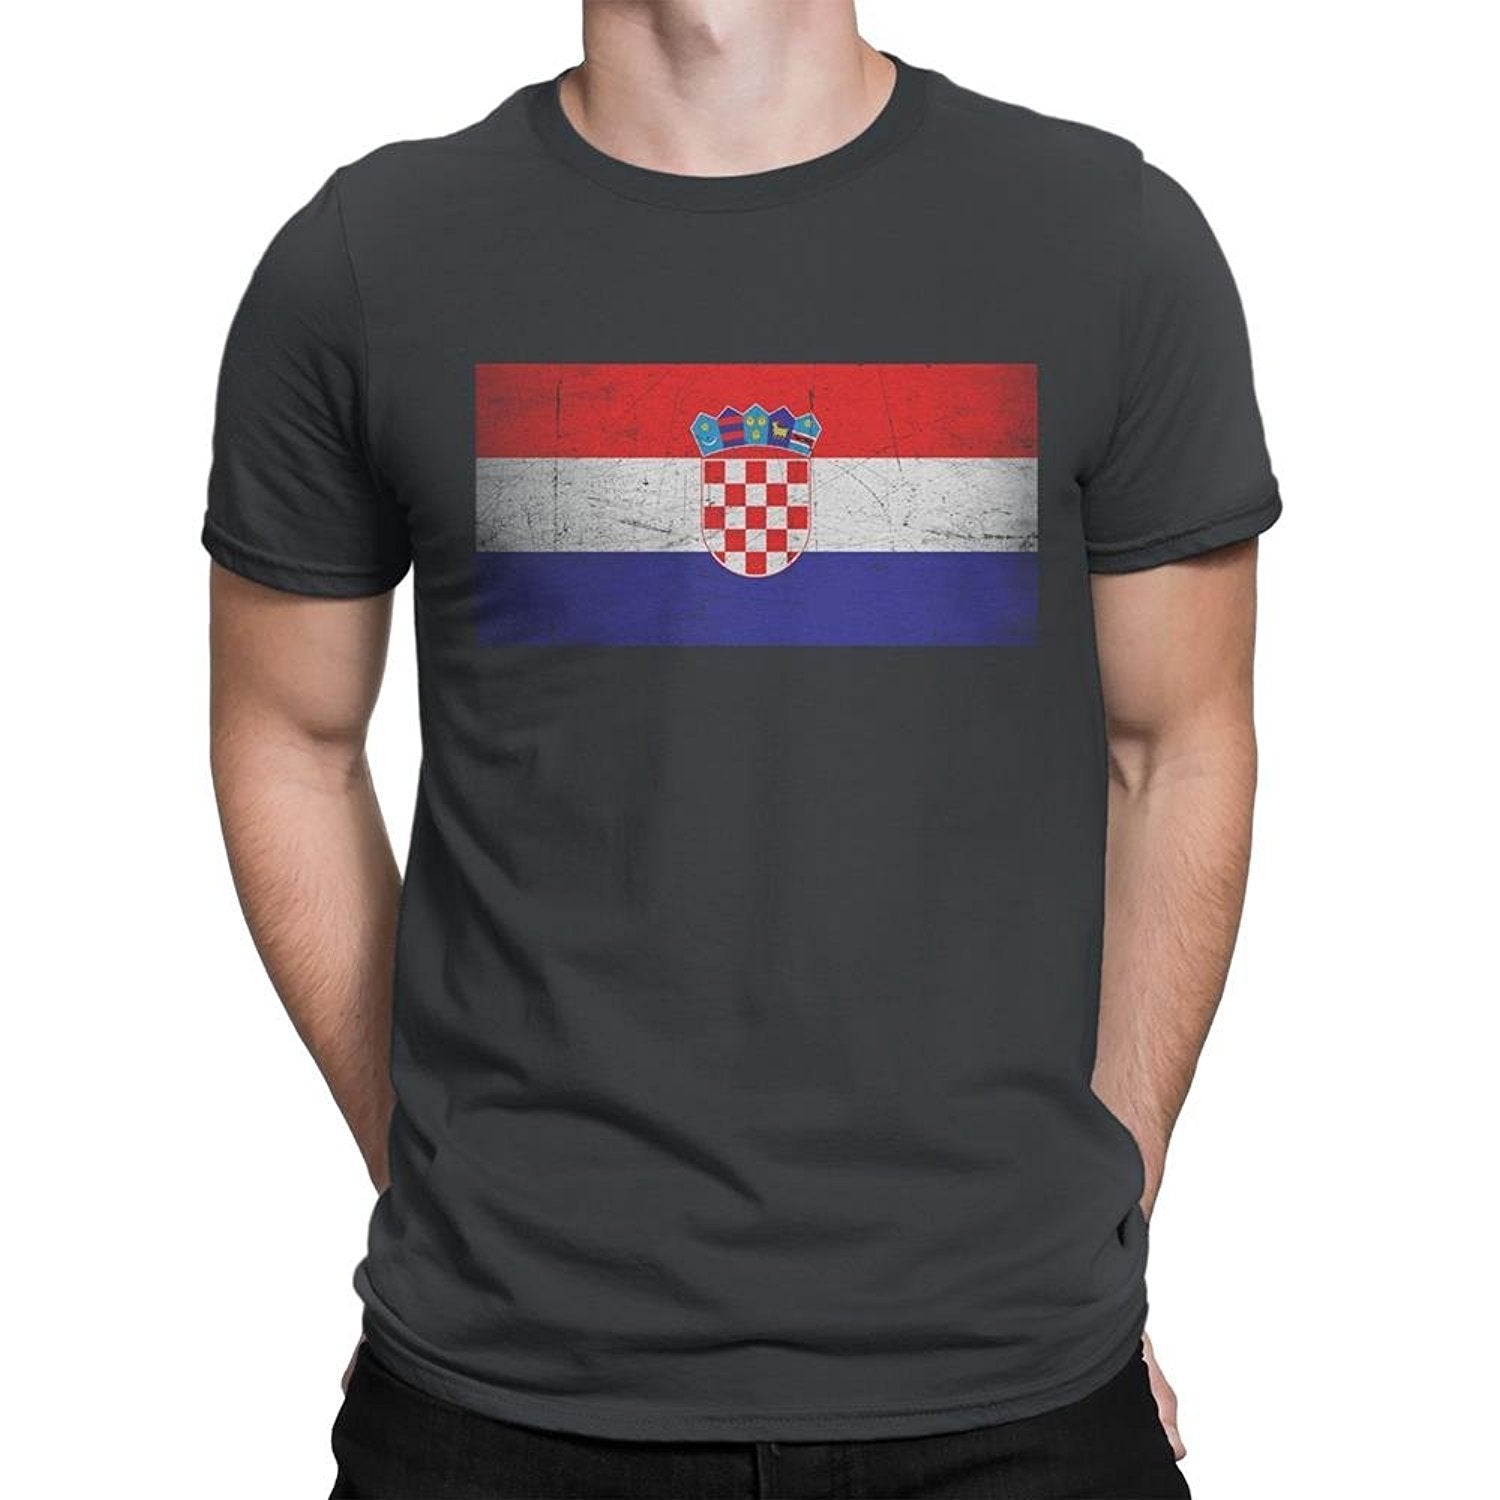 Croatia Flag Tee T-Shirt Unisex Mens Vintage Retro I Shirt